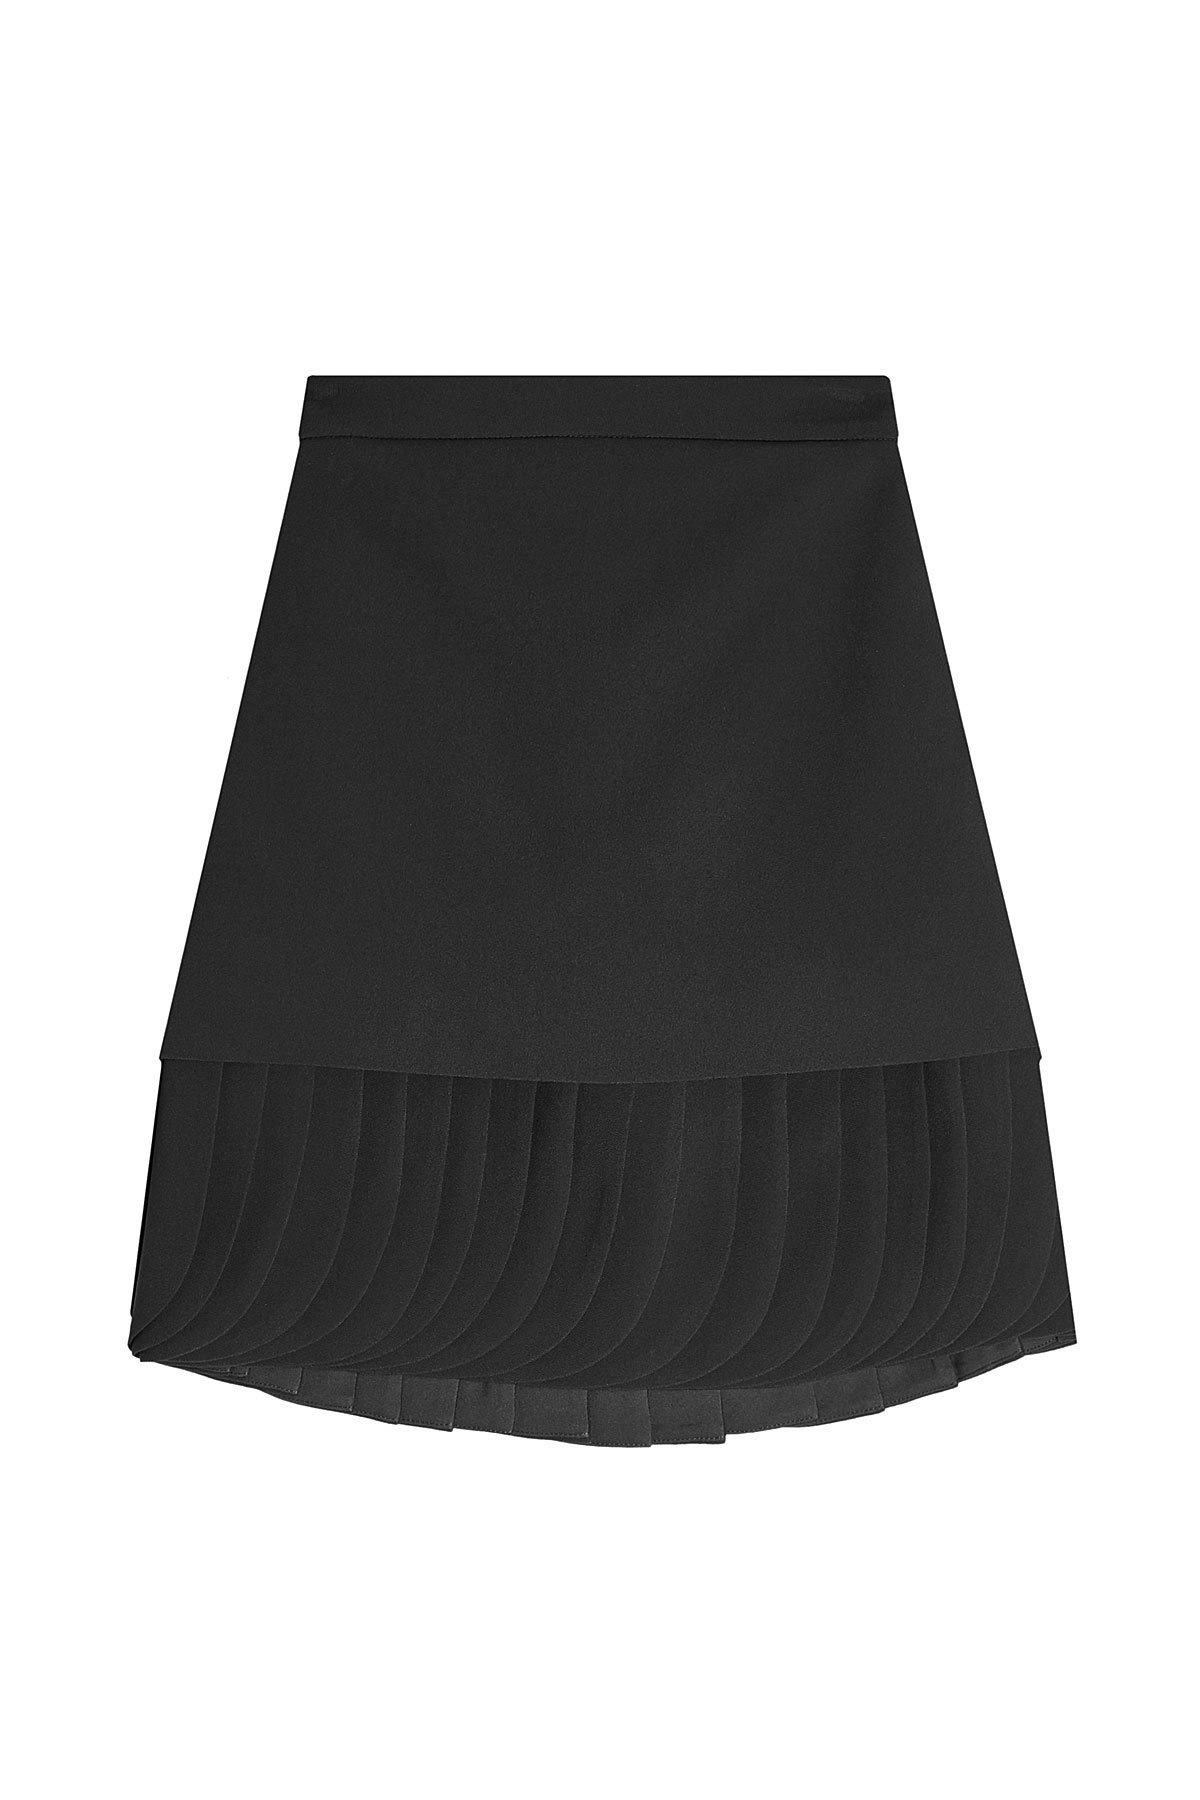 Brandon Maxwell - Crepe Skirt with Pleated Petal Hem